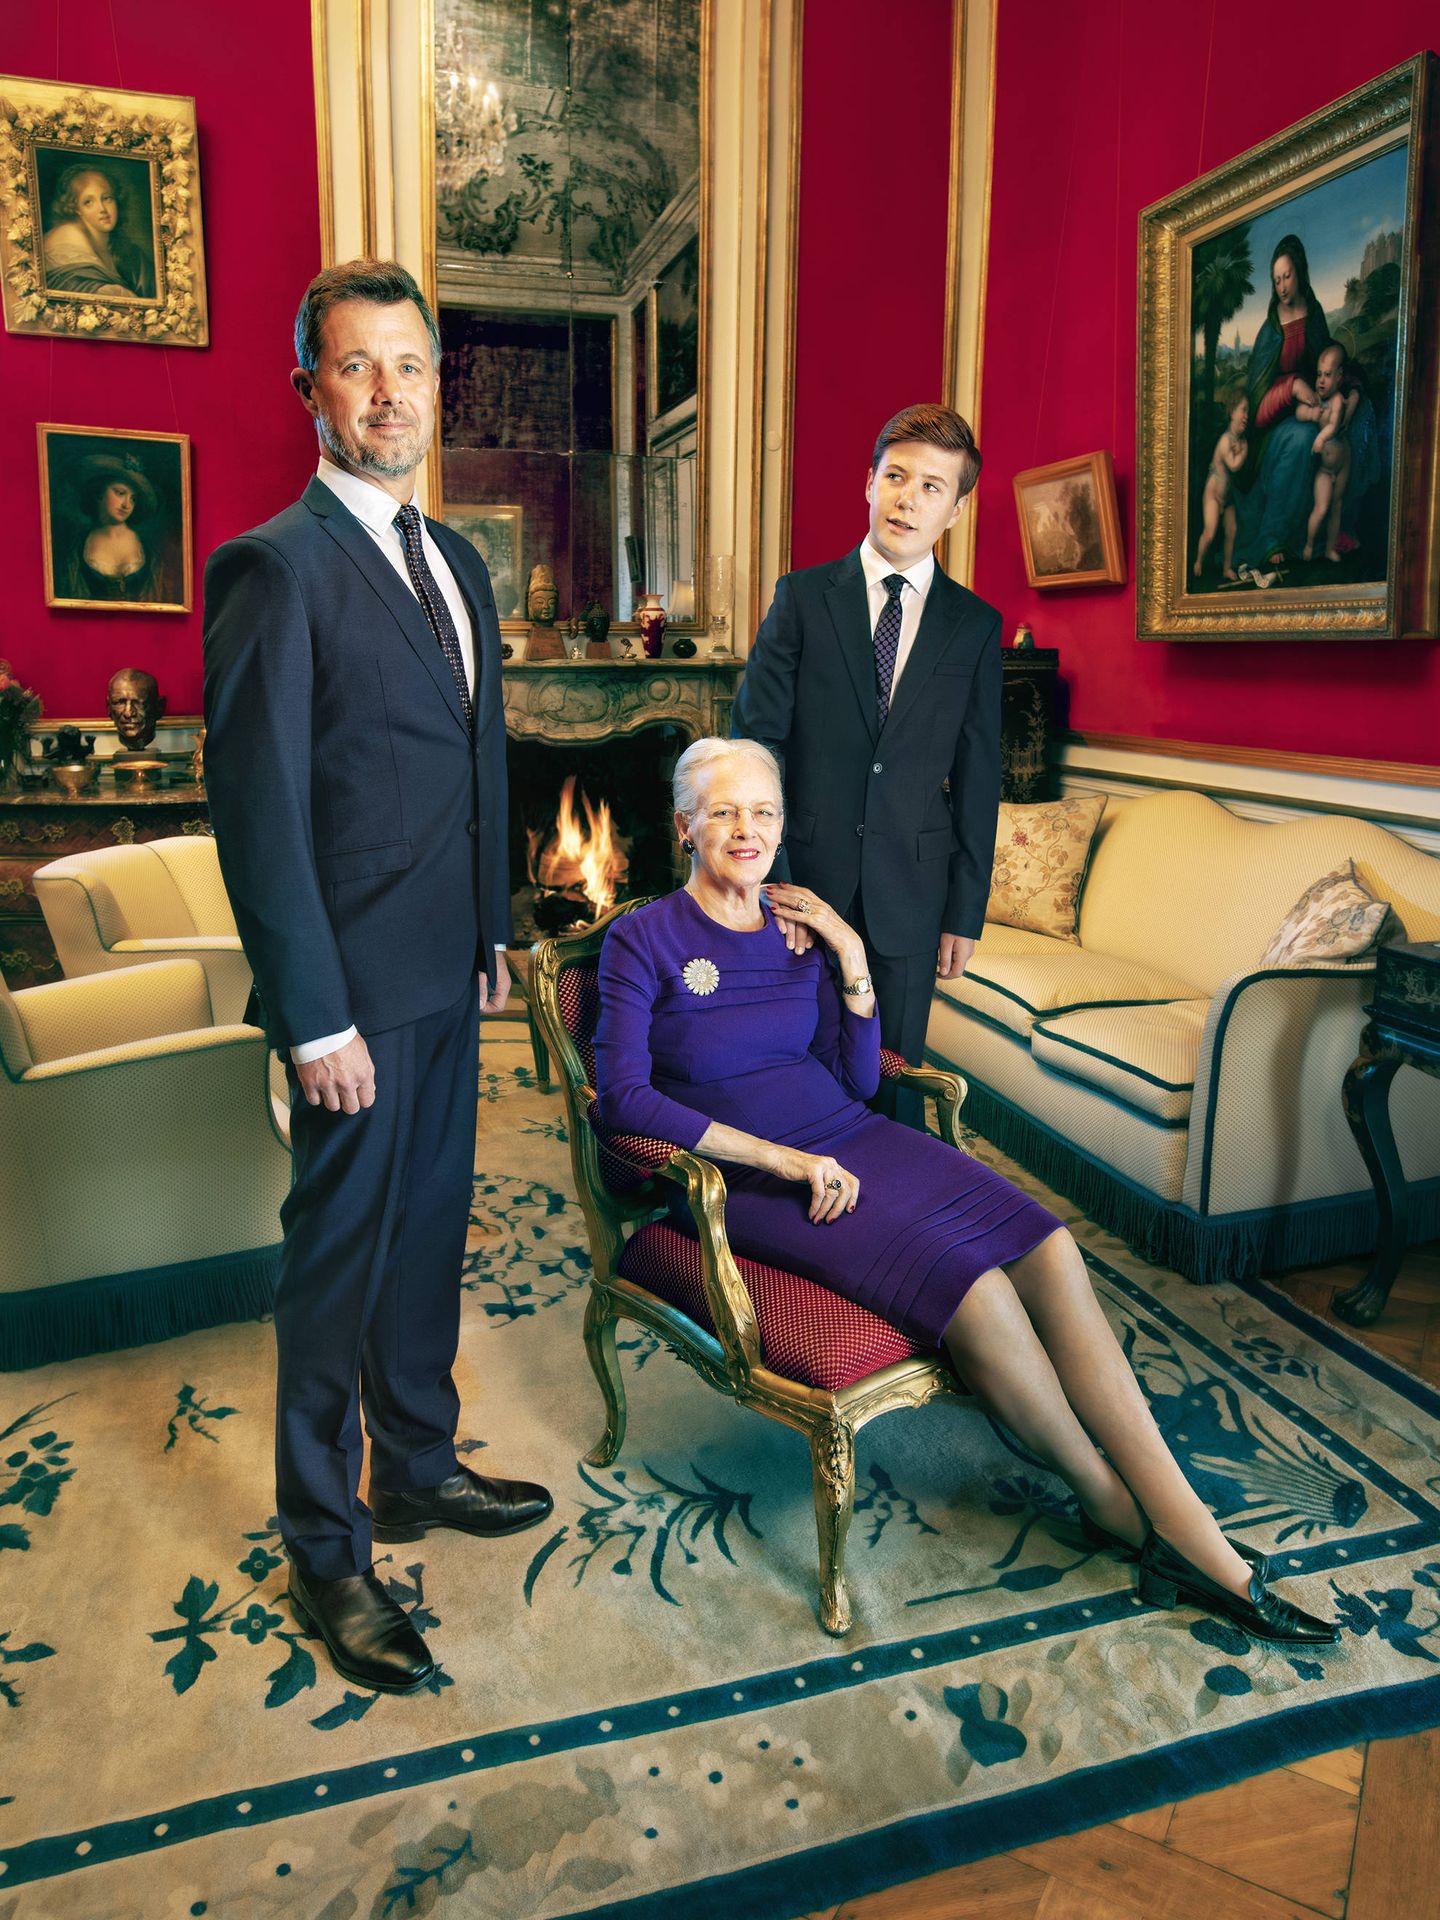 La reina Margarita, junto a los príncipes Federico y Christian. (Per Morten Abrahamsen / Casa Real de Dinamarca)